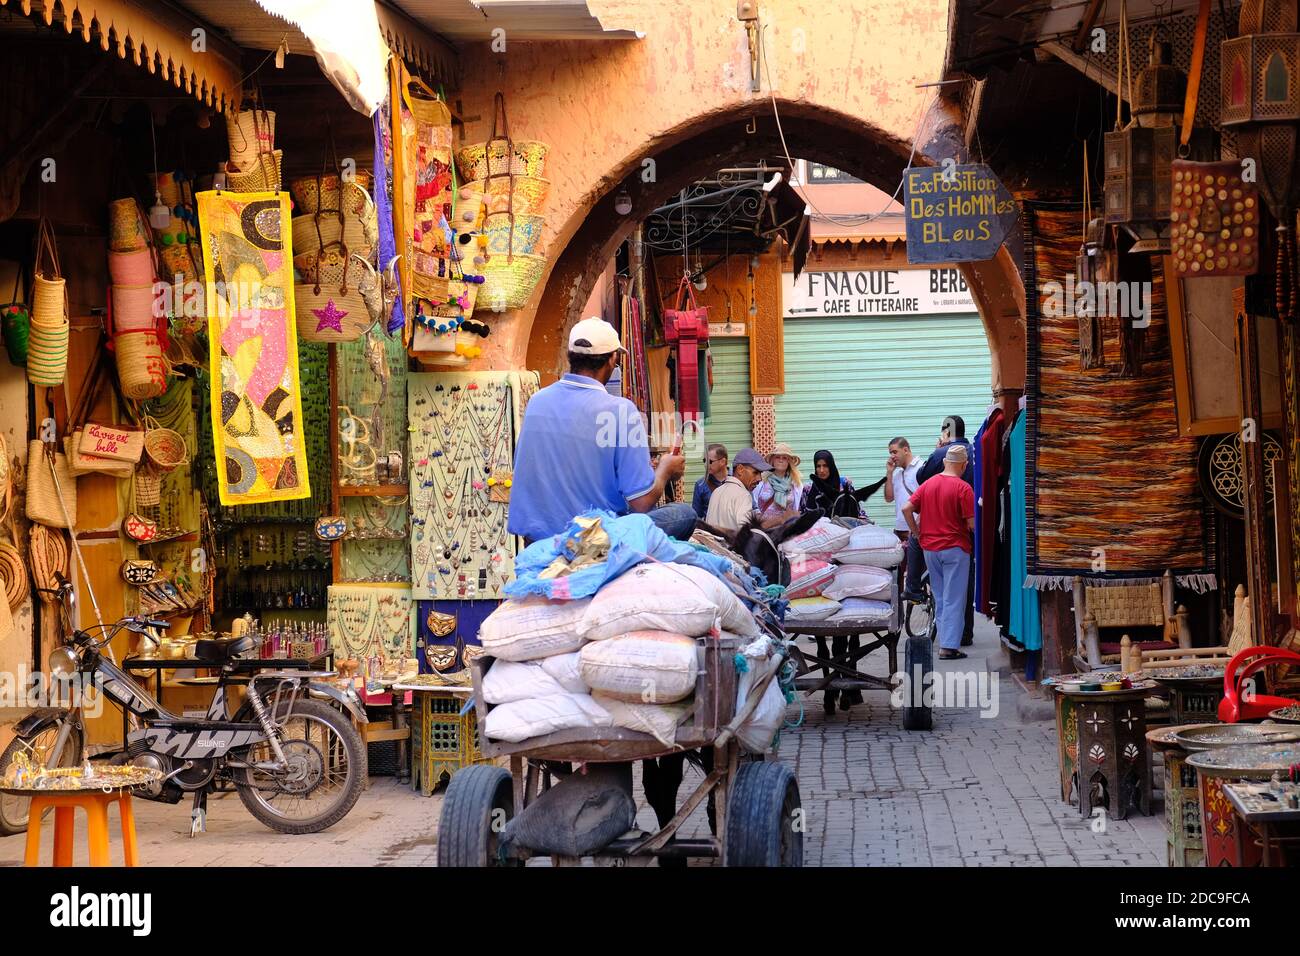 Morocco Marrakesh - Medina Red city with narrow trading streets Stock Photo